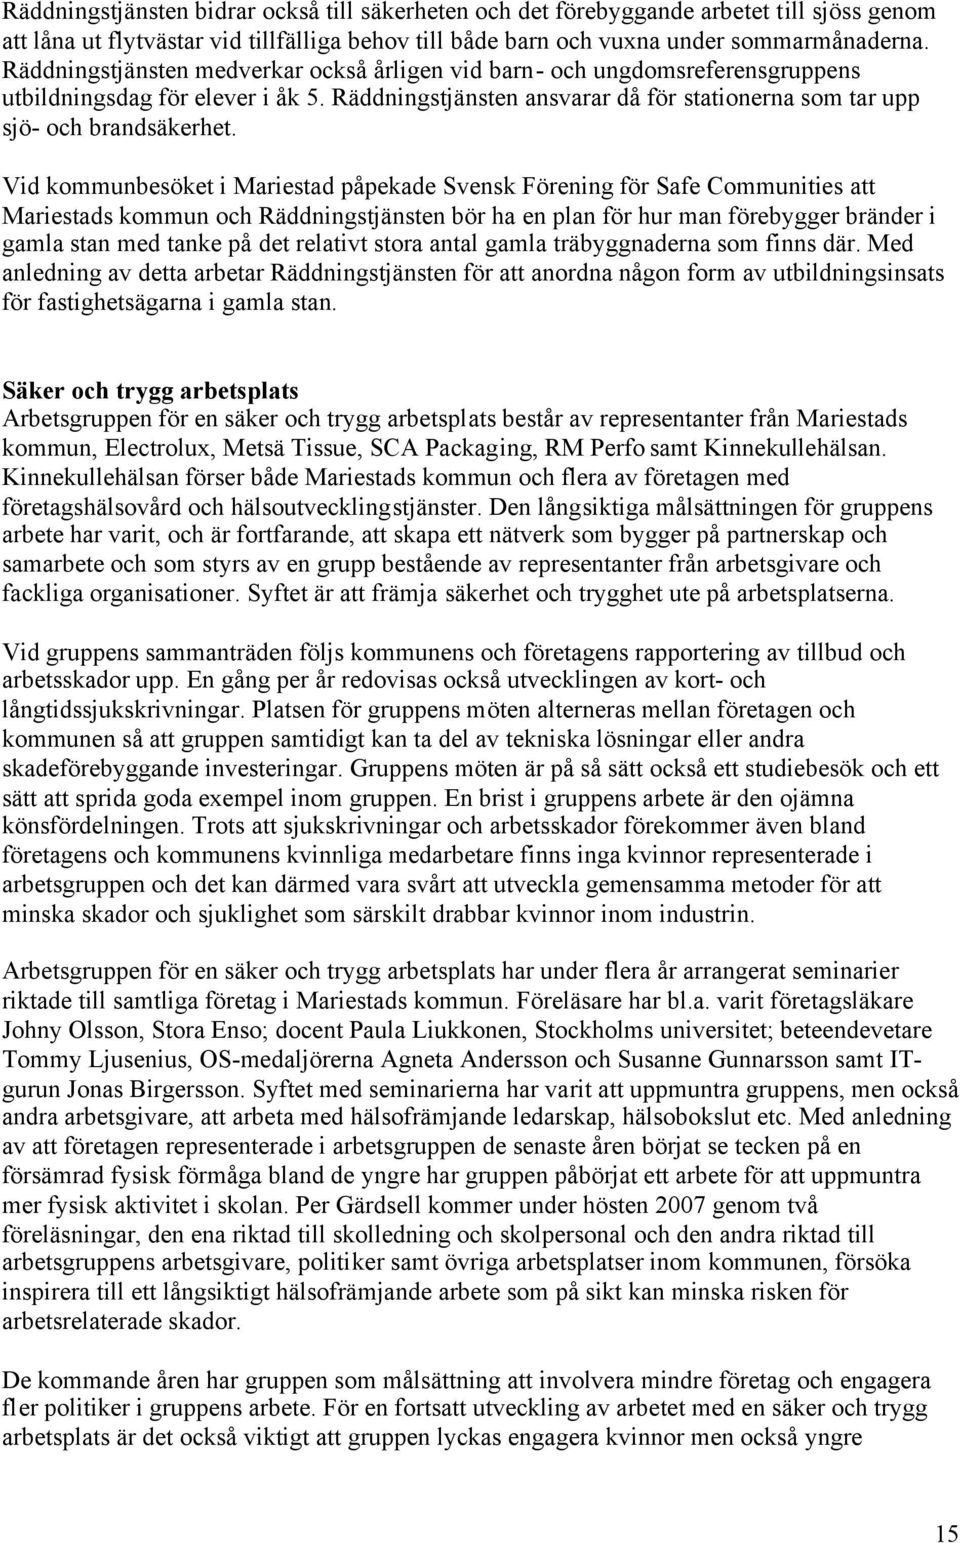 Vid kommunbesöket i Mariestad påpekade Svensk Förening för Safe Communities att Mariestads kommun och Räddningstjänsten bör ha en plan för hur man förebygger bränder i gamla stan med tanke på det